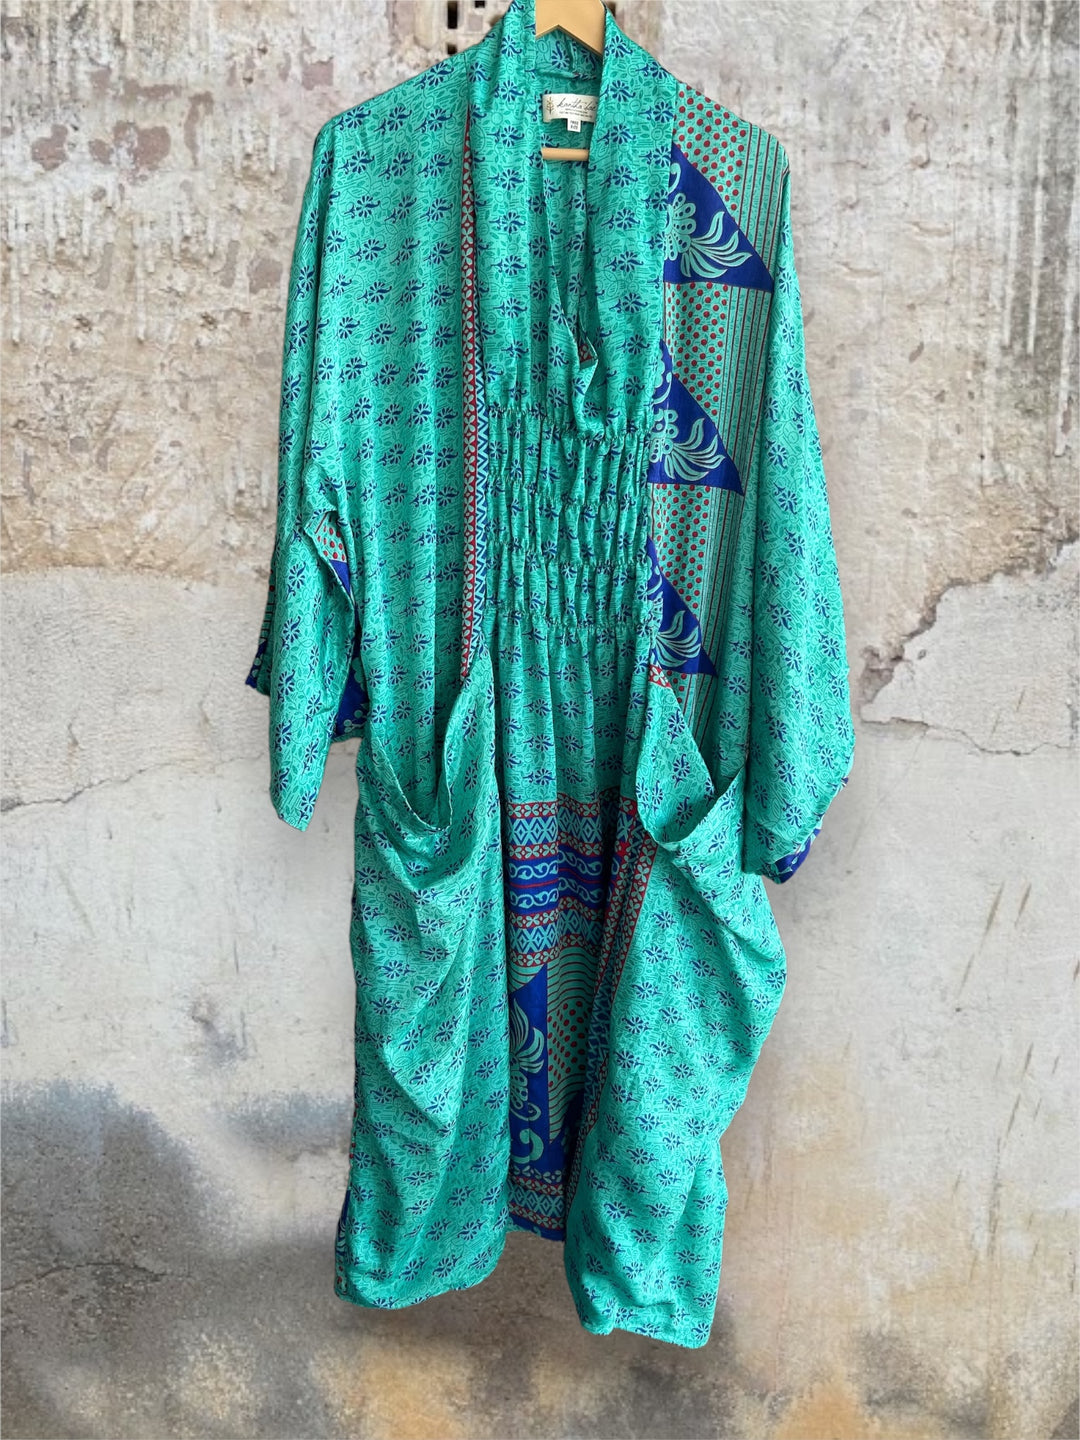 Ruched Dress 0424 032 - Kantha Bae